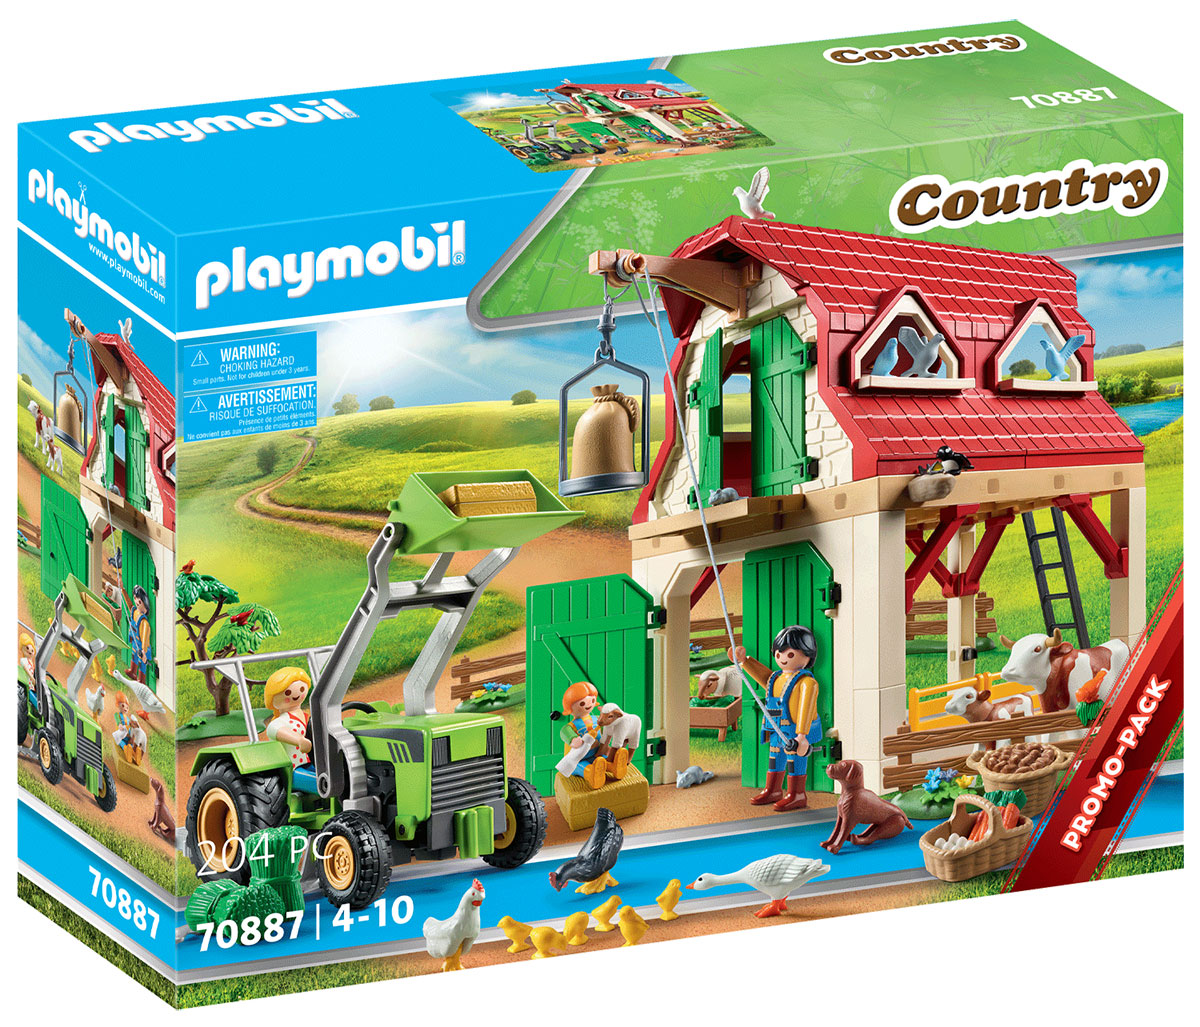 Nouveau Playmobil Country 70887 Ferme avec animaux // Décembre 2021